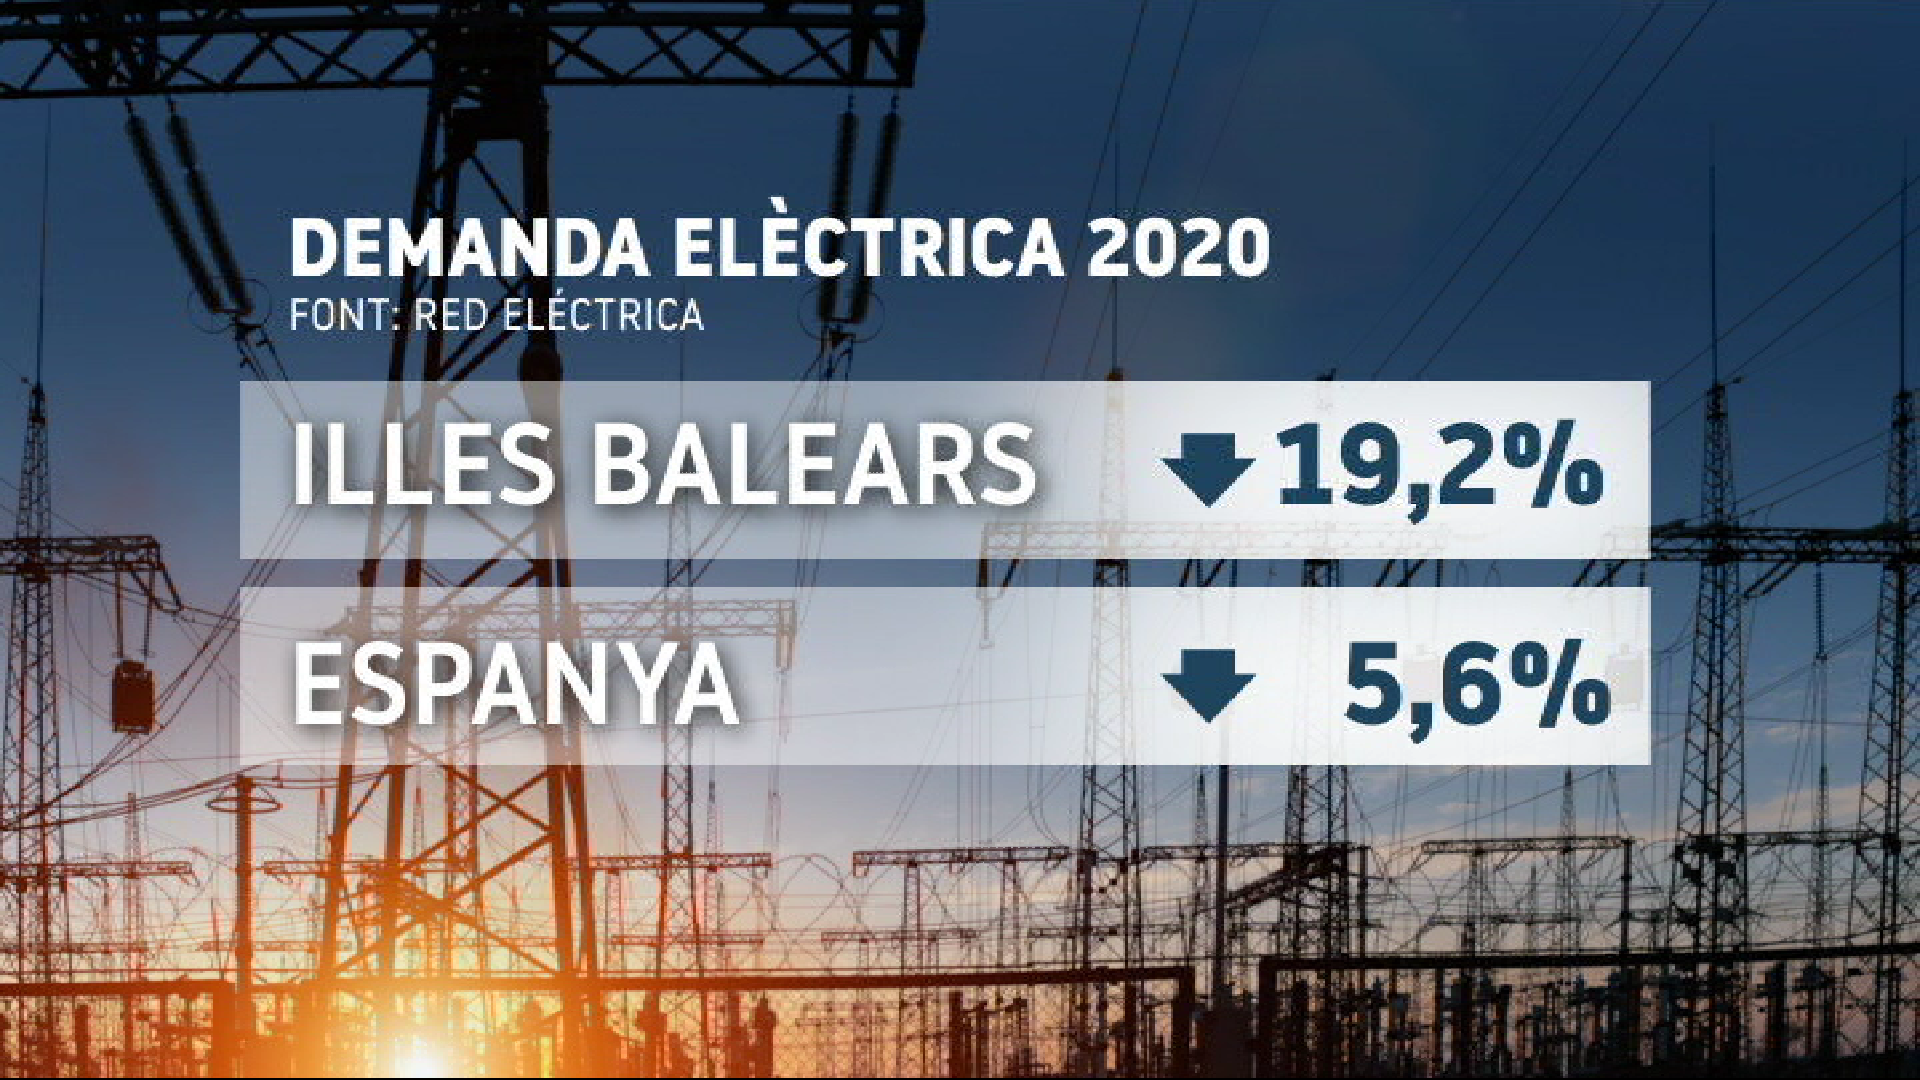 La demanda elèctrica cau un 19%25 a les Illes durant el 2020